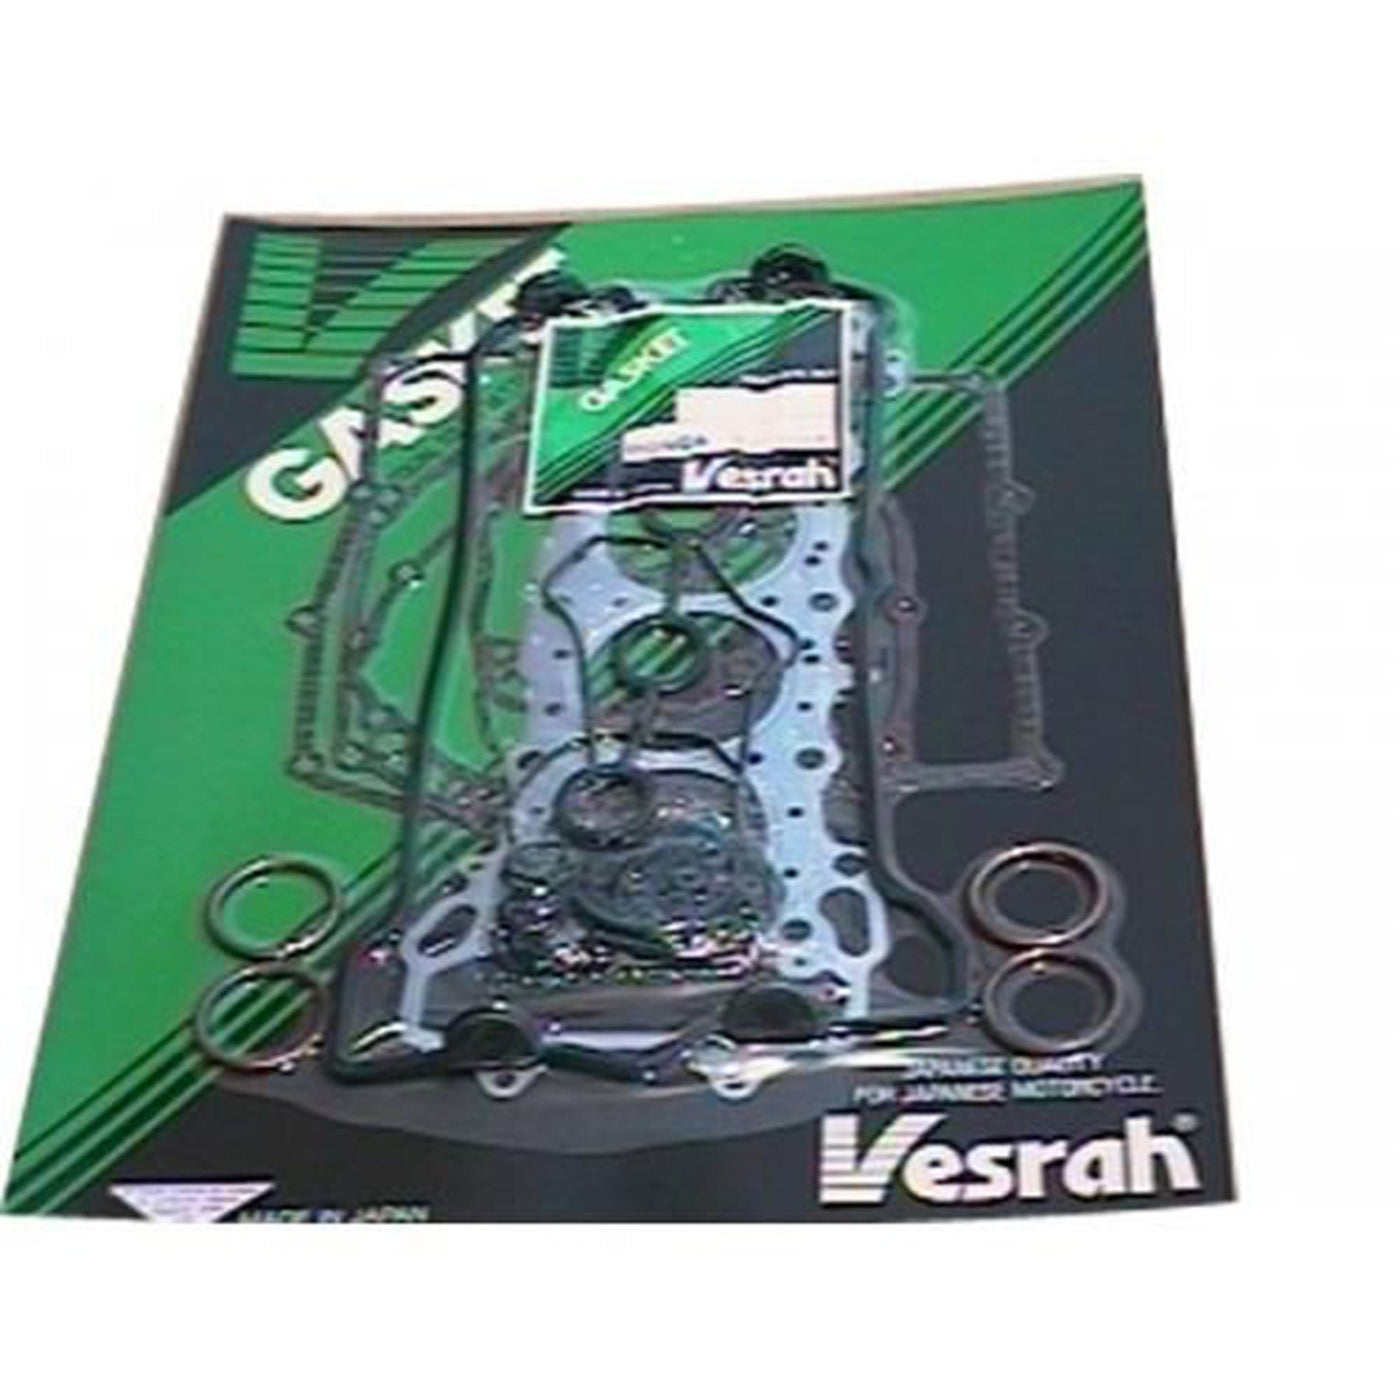 Vesrah VG-1007 Complete Gasket Kit #VG-1007